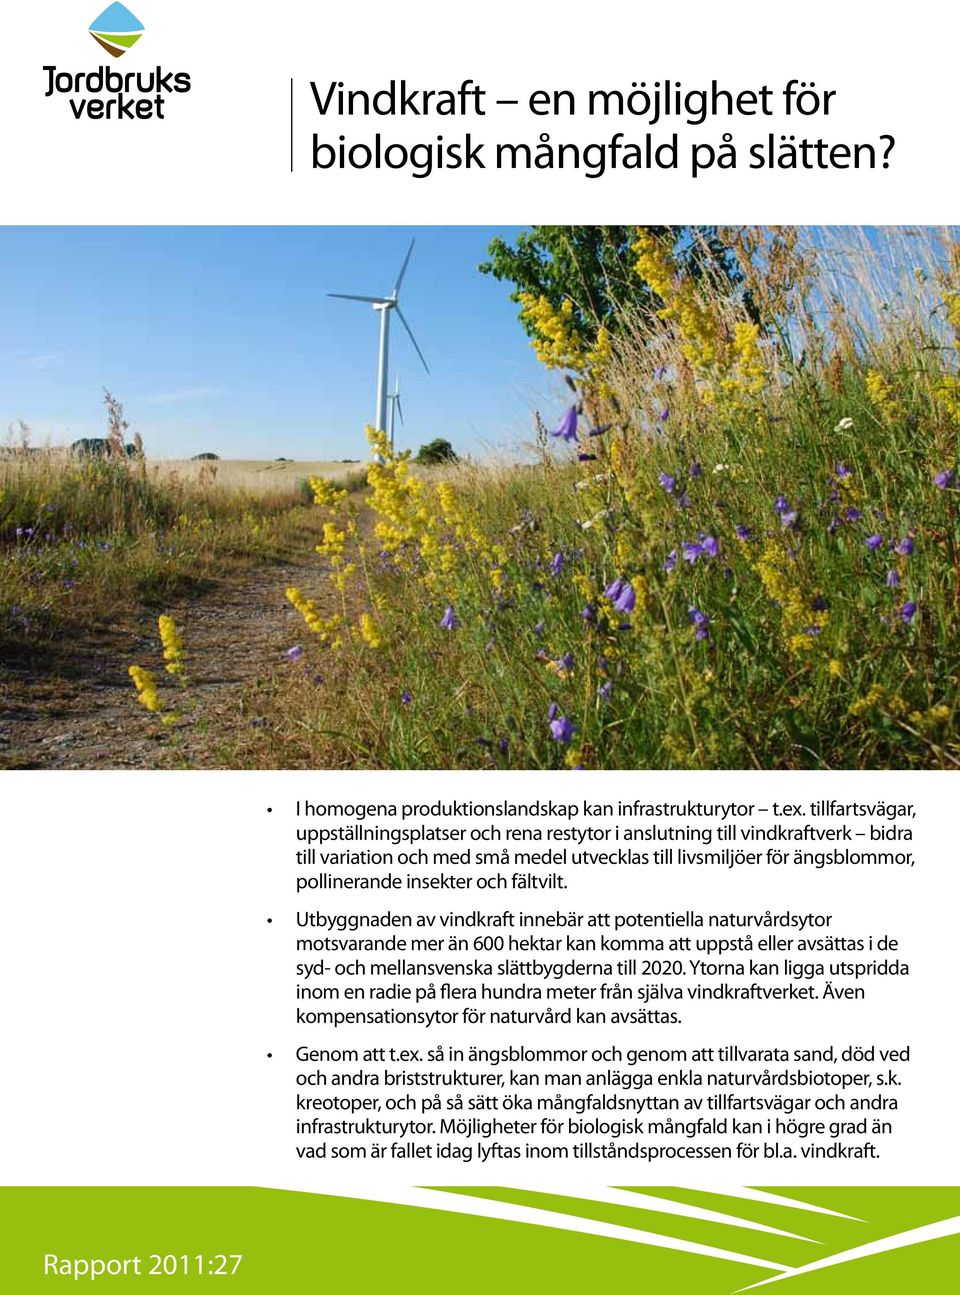 fältvilt. Utbyggnaden av vindkraft innebär att potentiella naturvårdsytor motsvarande mer än 600 hektar kan komma att uppstå eller avsättas i de syd- och mellansvenska slättbygderna till 2020.